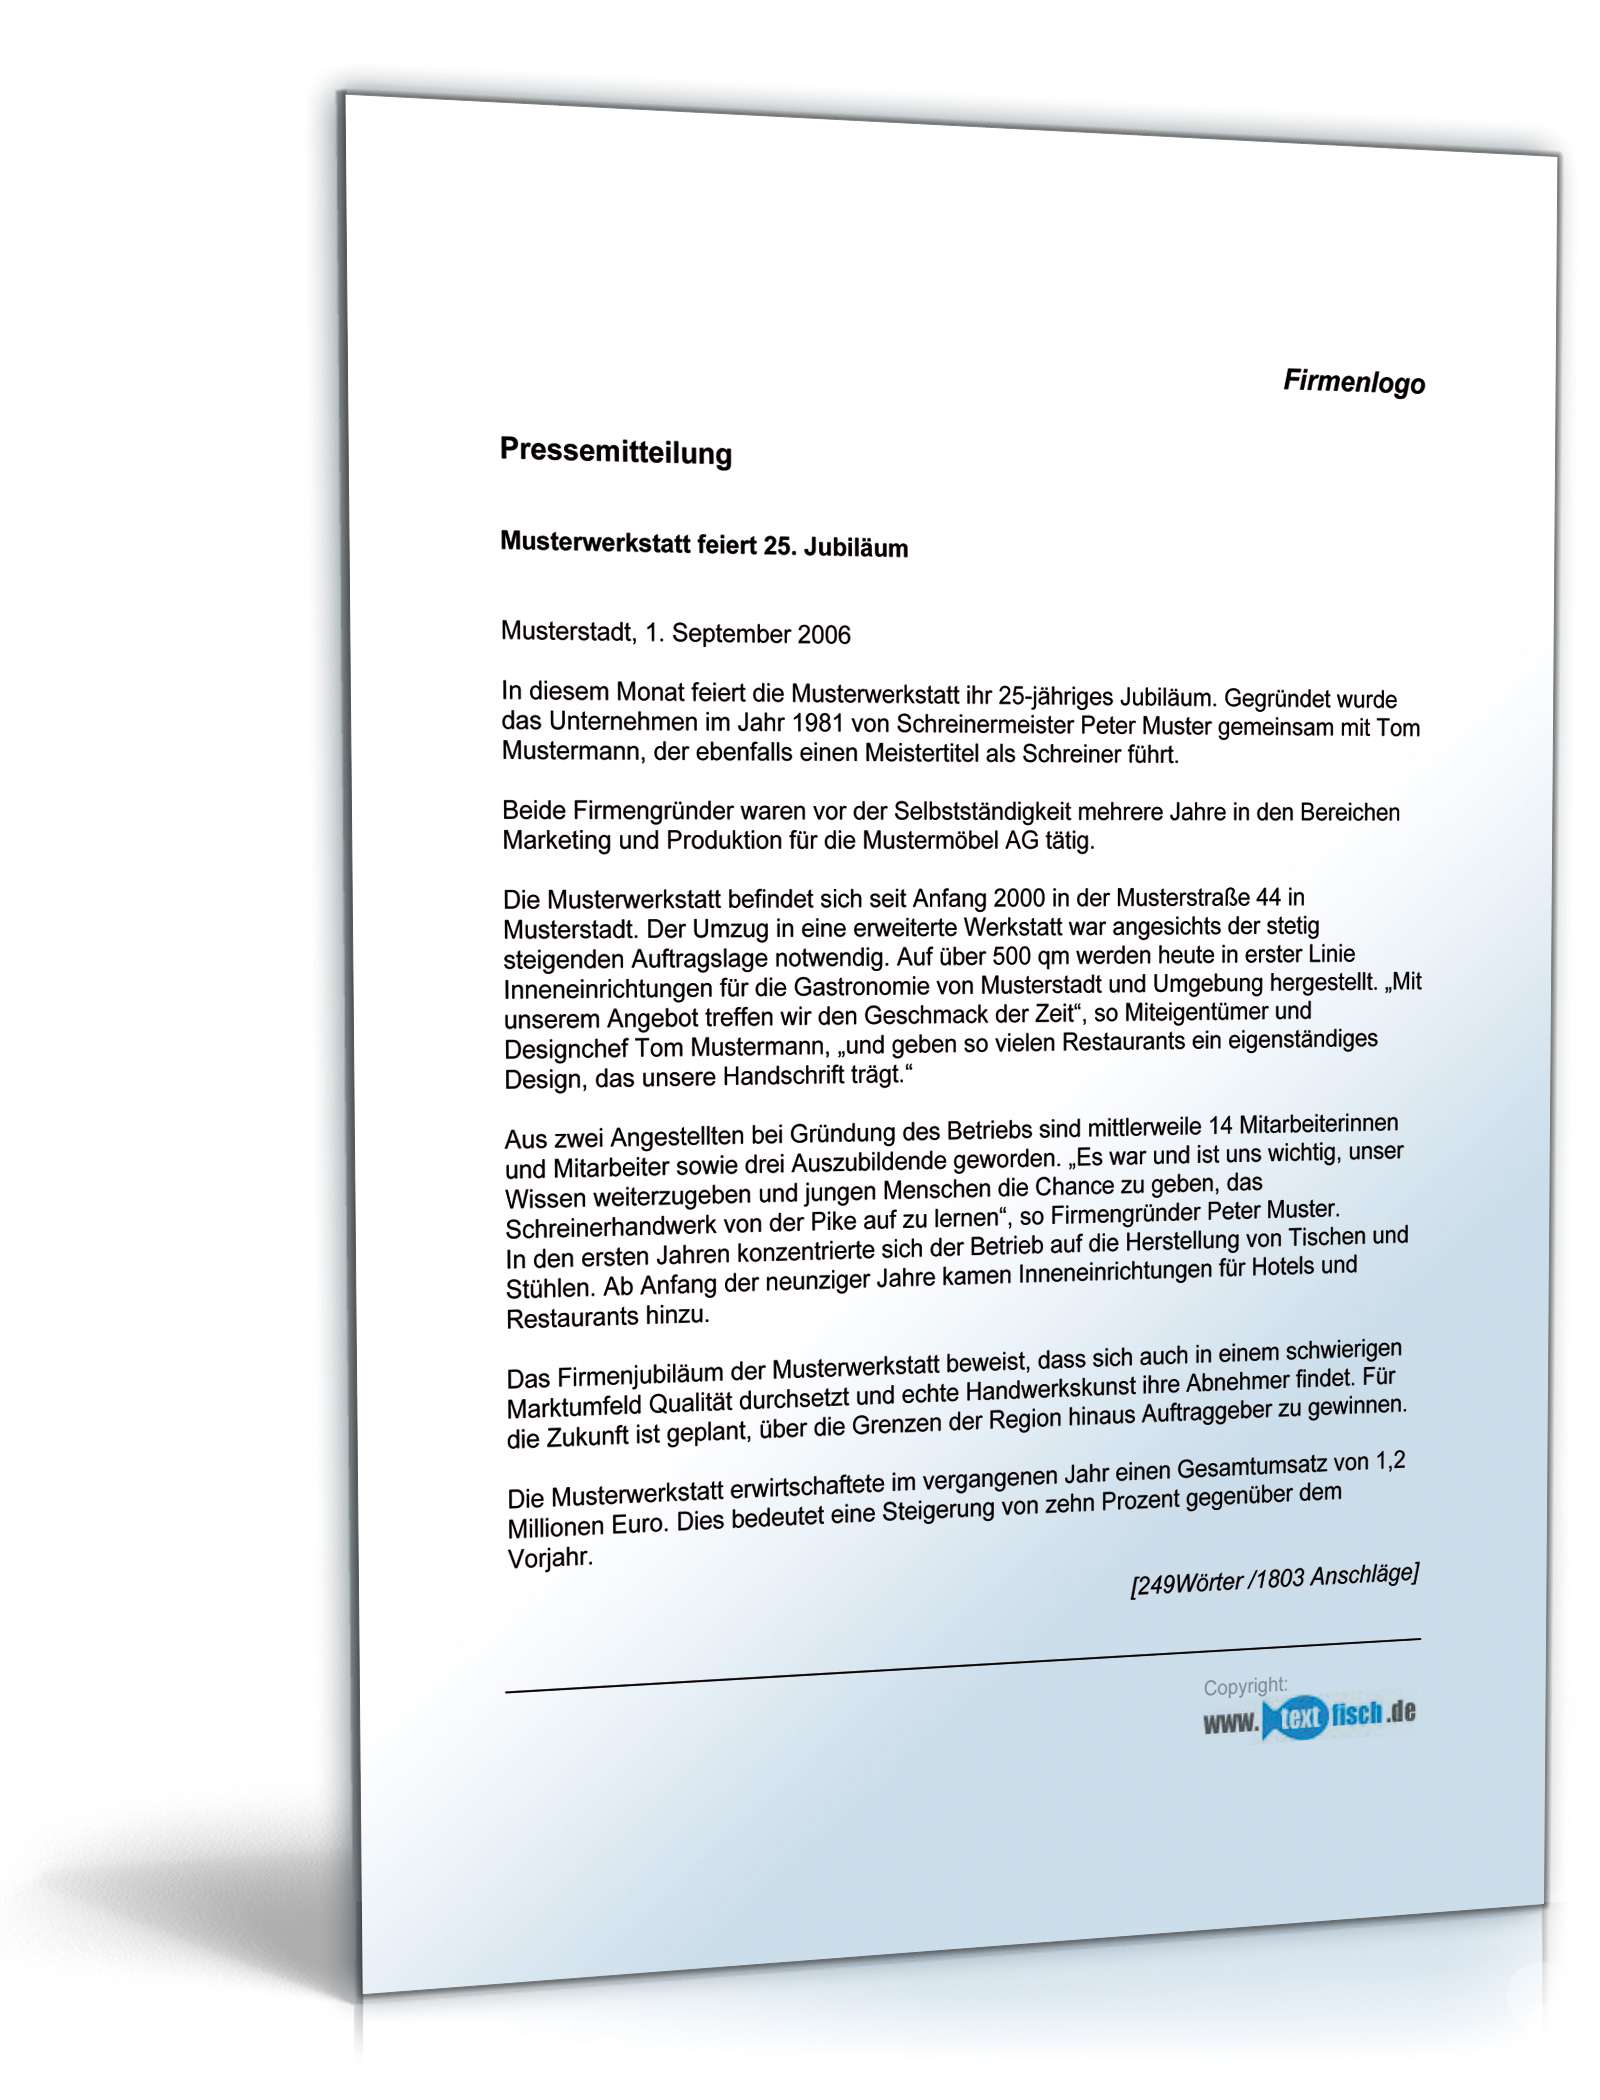 Hauptbild des Produkts: Pressemitteilung Firmenjubiläum eines Handwerksbetriebs